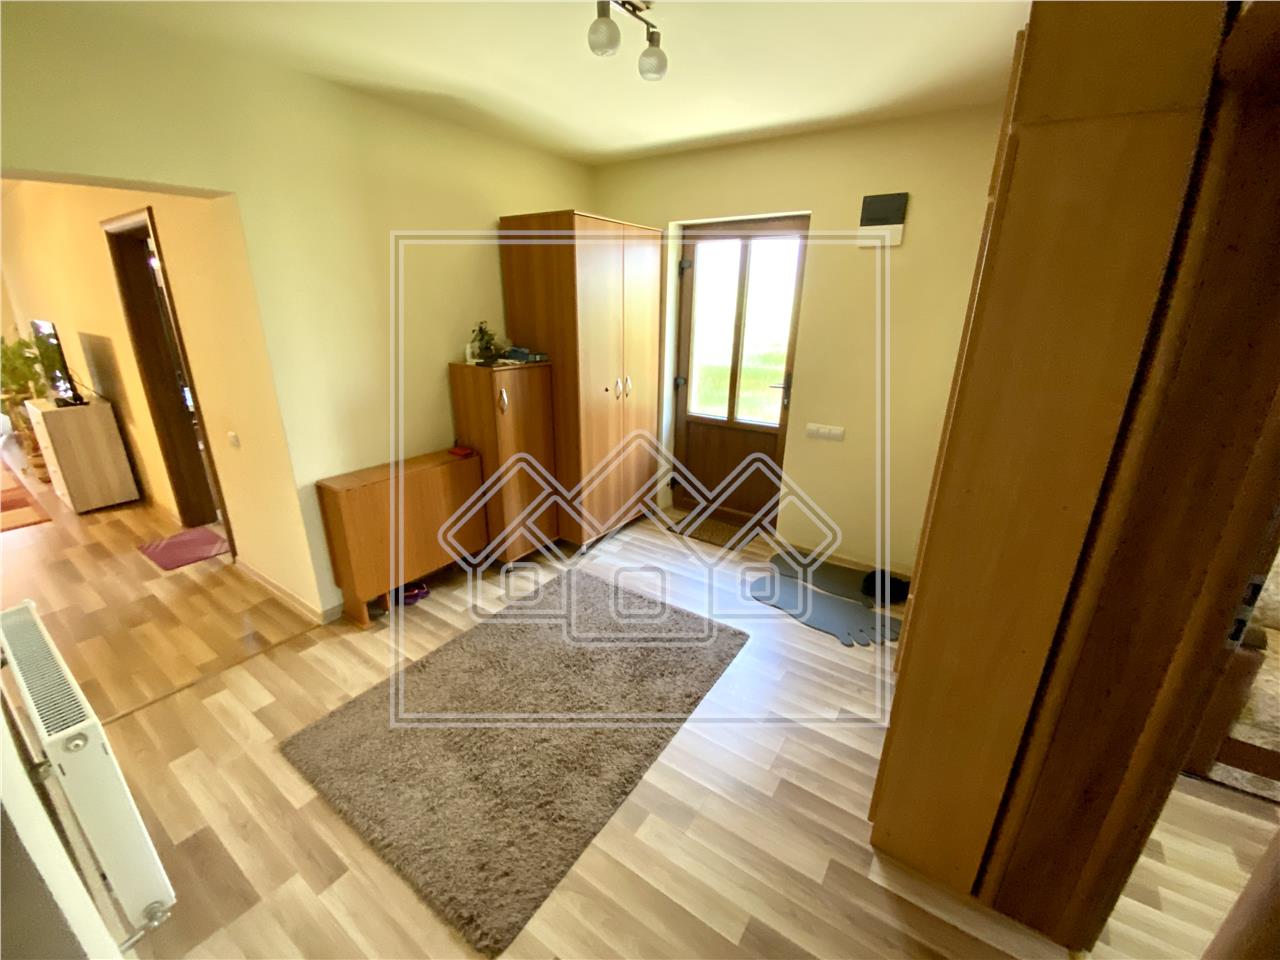 Haus zu verkaufen in Sibiu - Einzelperson - Grundst?ck 261 qm - C. Cis